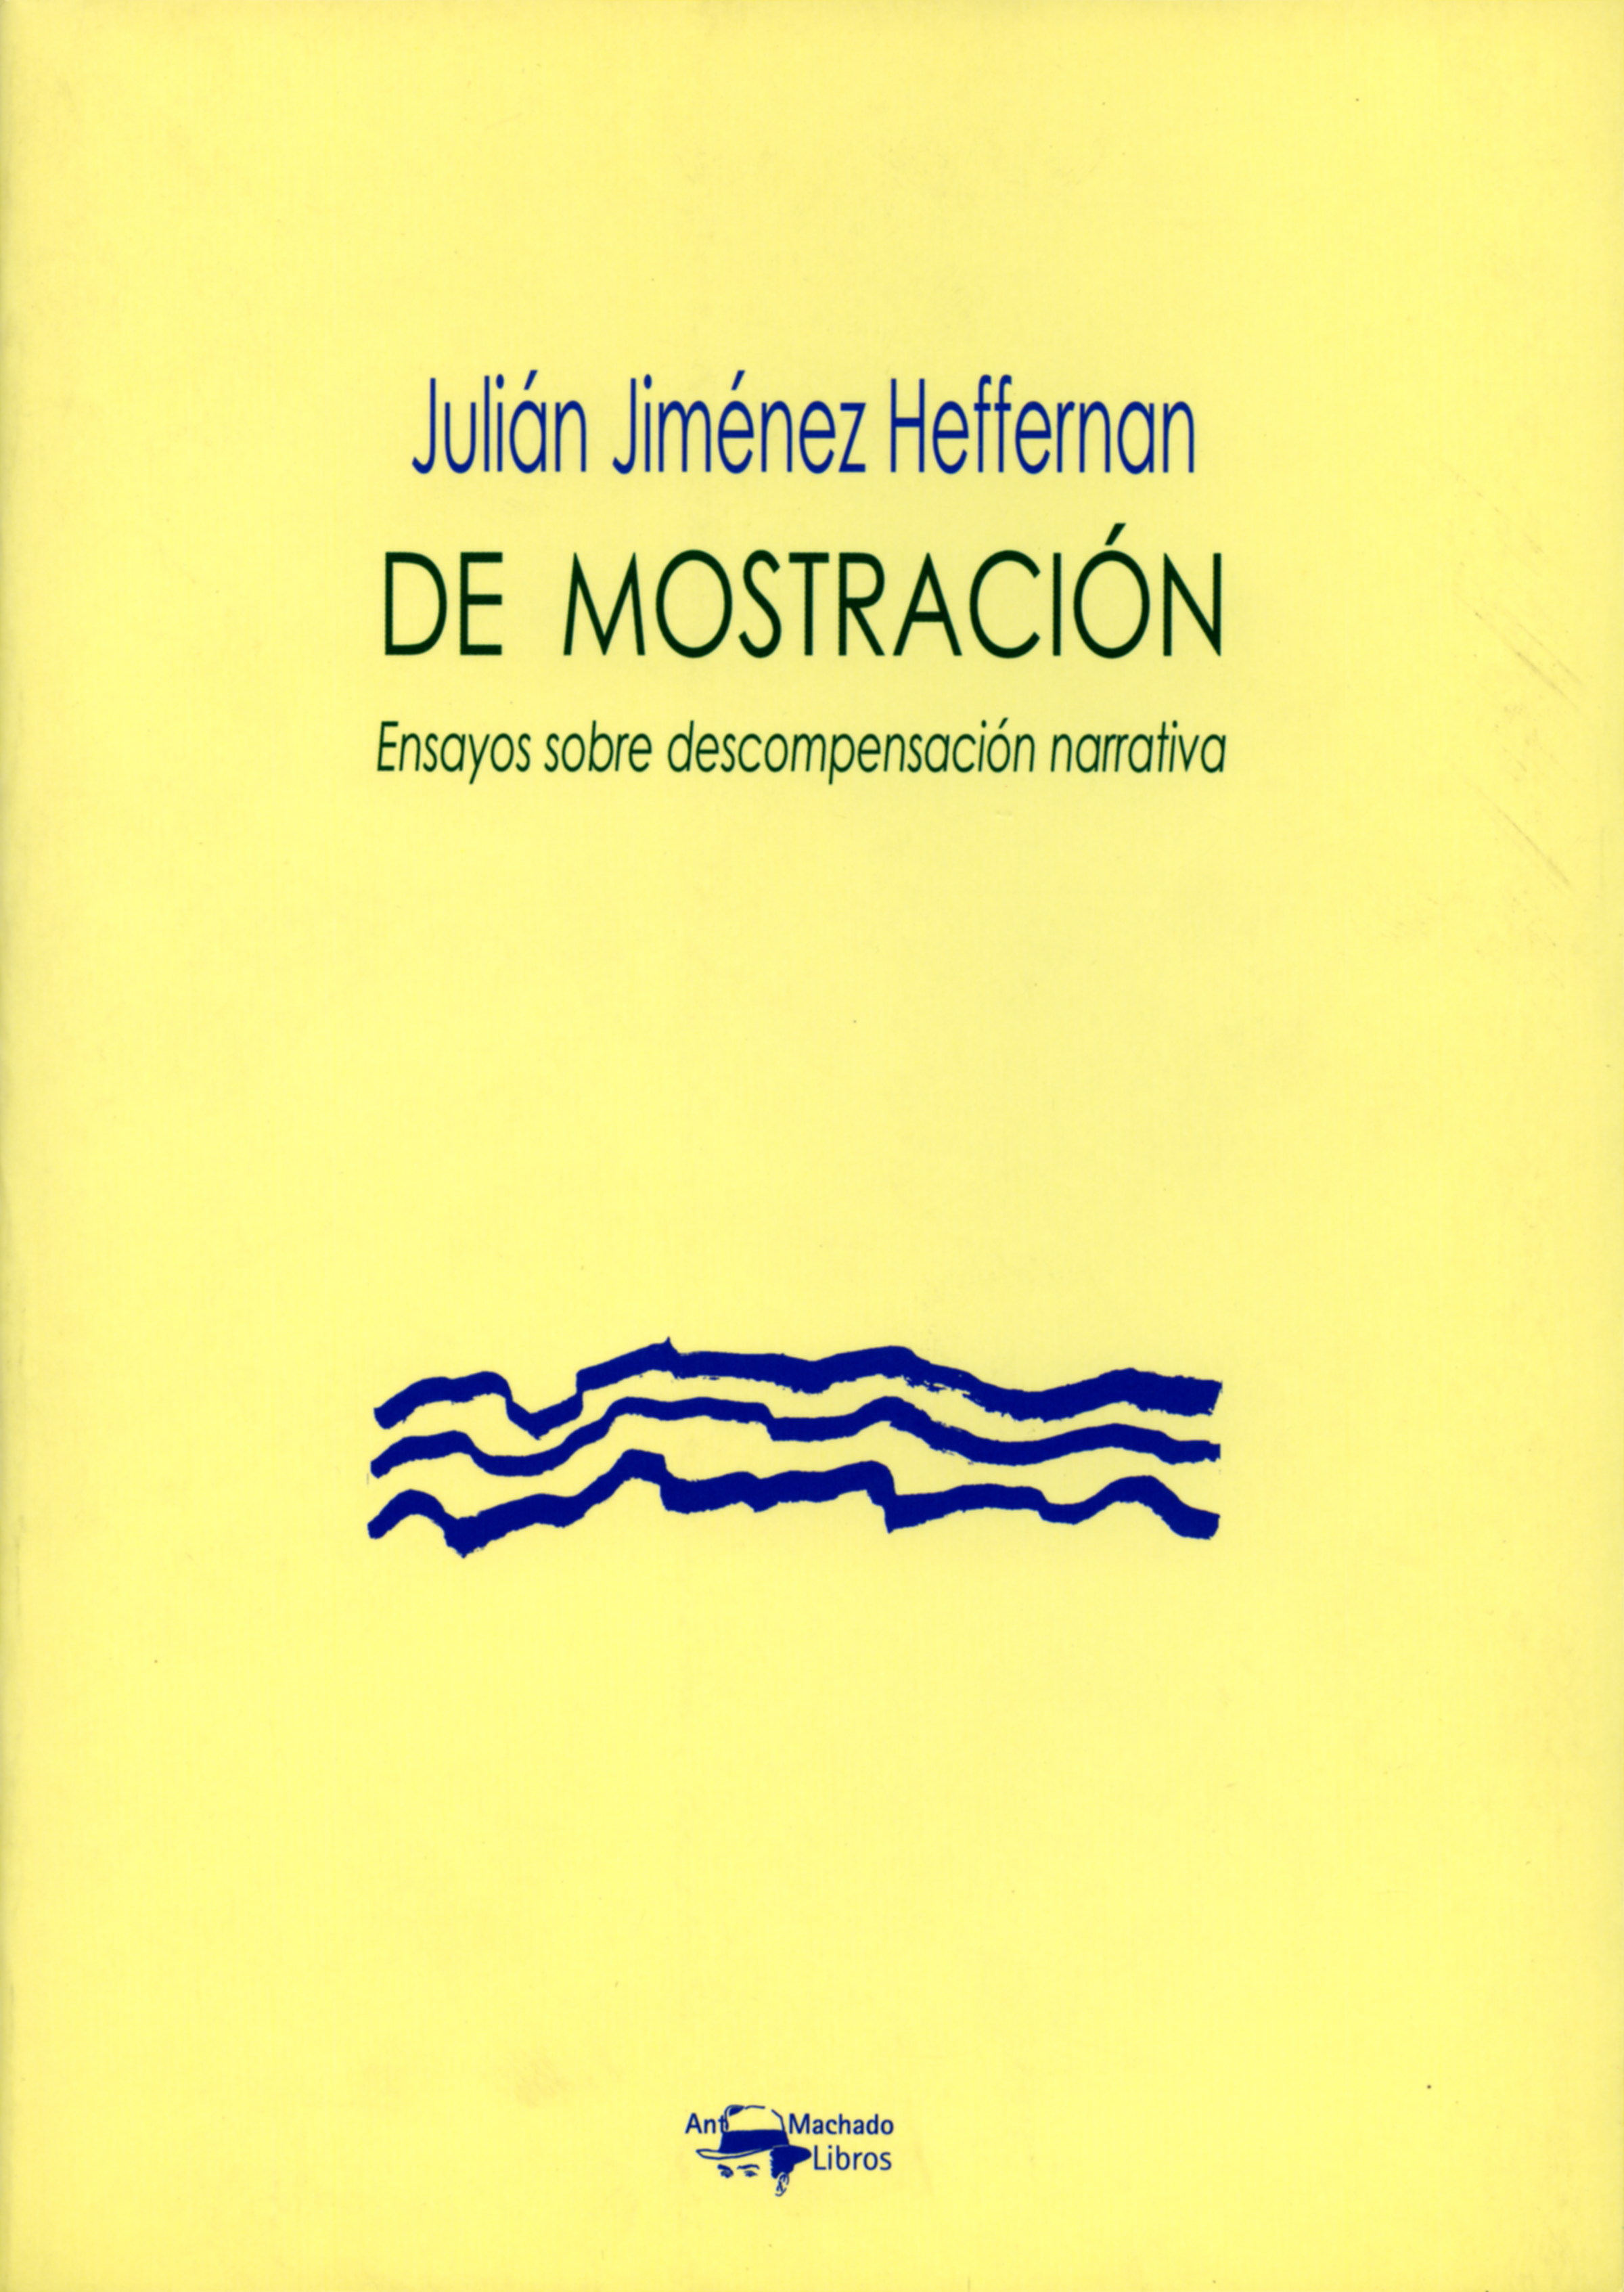 Julian Jimenez Heffernan De mostración